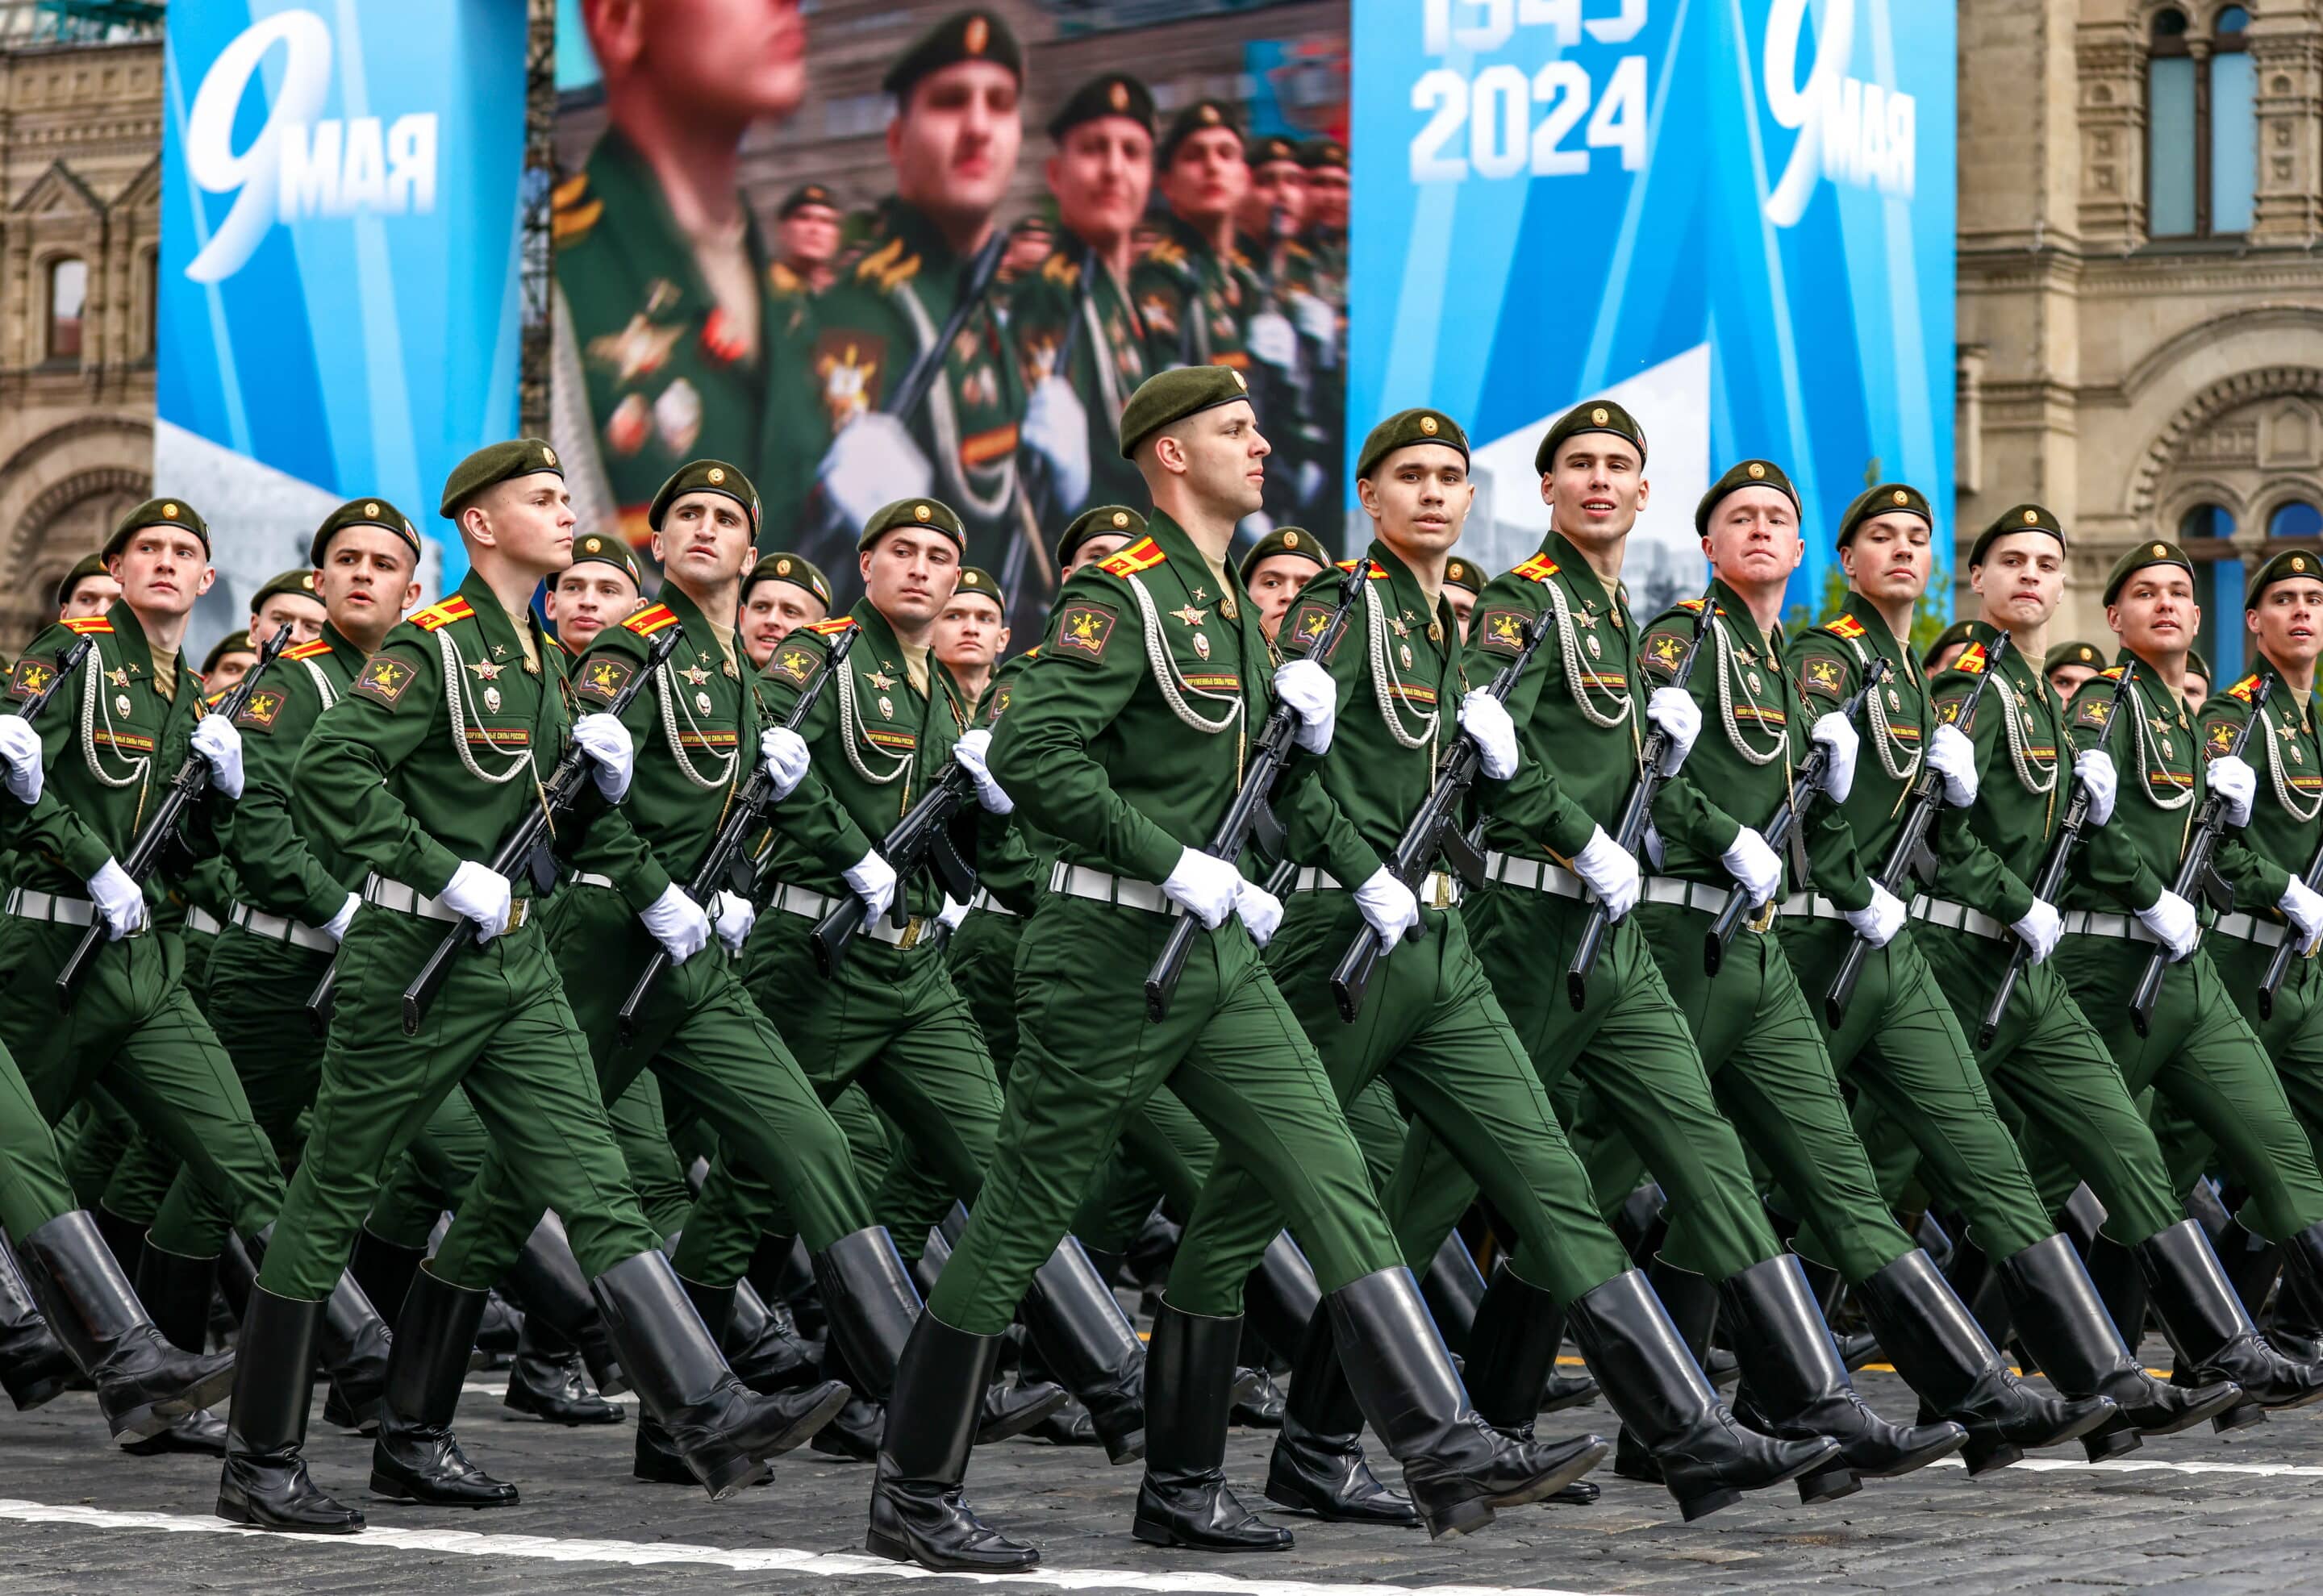 RUSSIE, MOSCOU - 5 MAI 2024 : Des militaires marchent en formation lors d'une répétition générale du défilé du 9 mai, jour de la Victoire, qui marquera le 79e anniversaire de la victoire sur l'Allemagne nazie lors de la Seconde Guerre mondiale. (C) Sipa